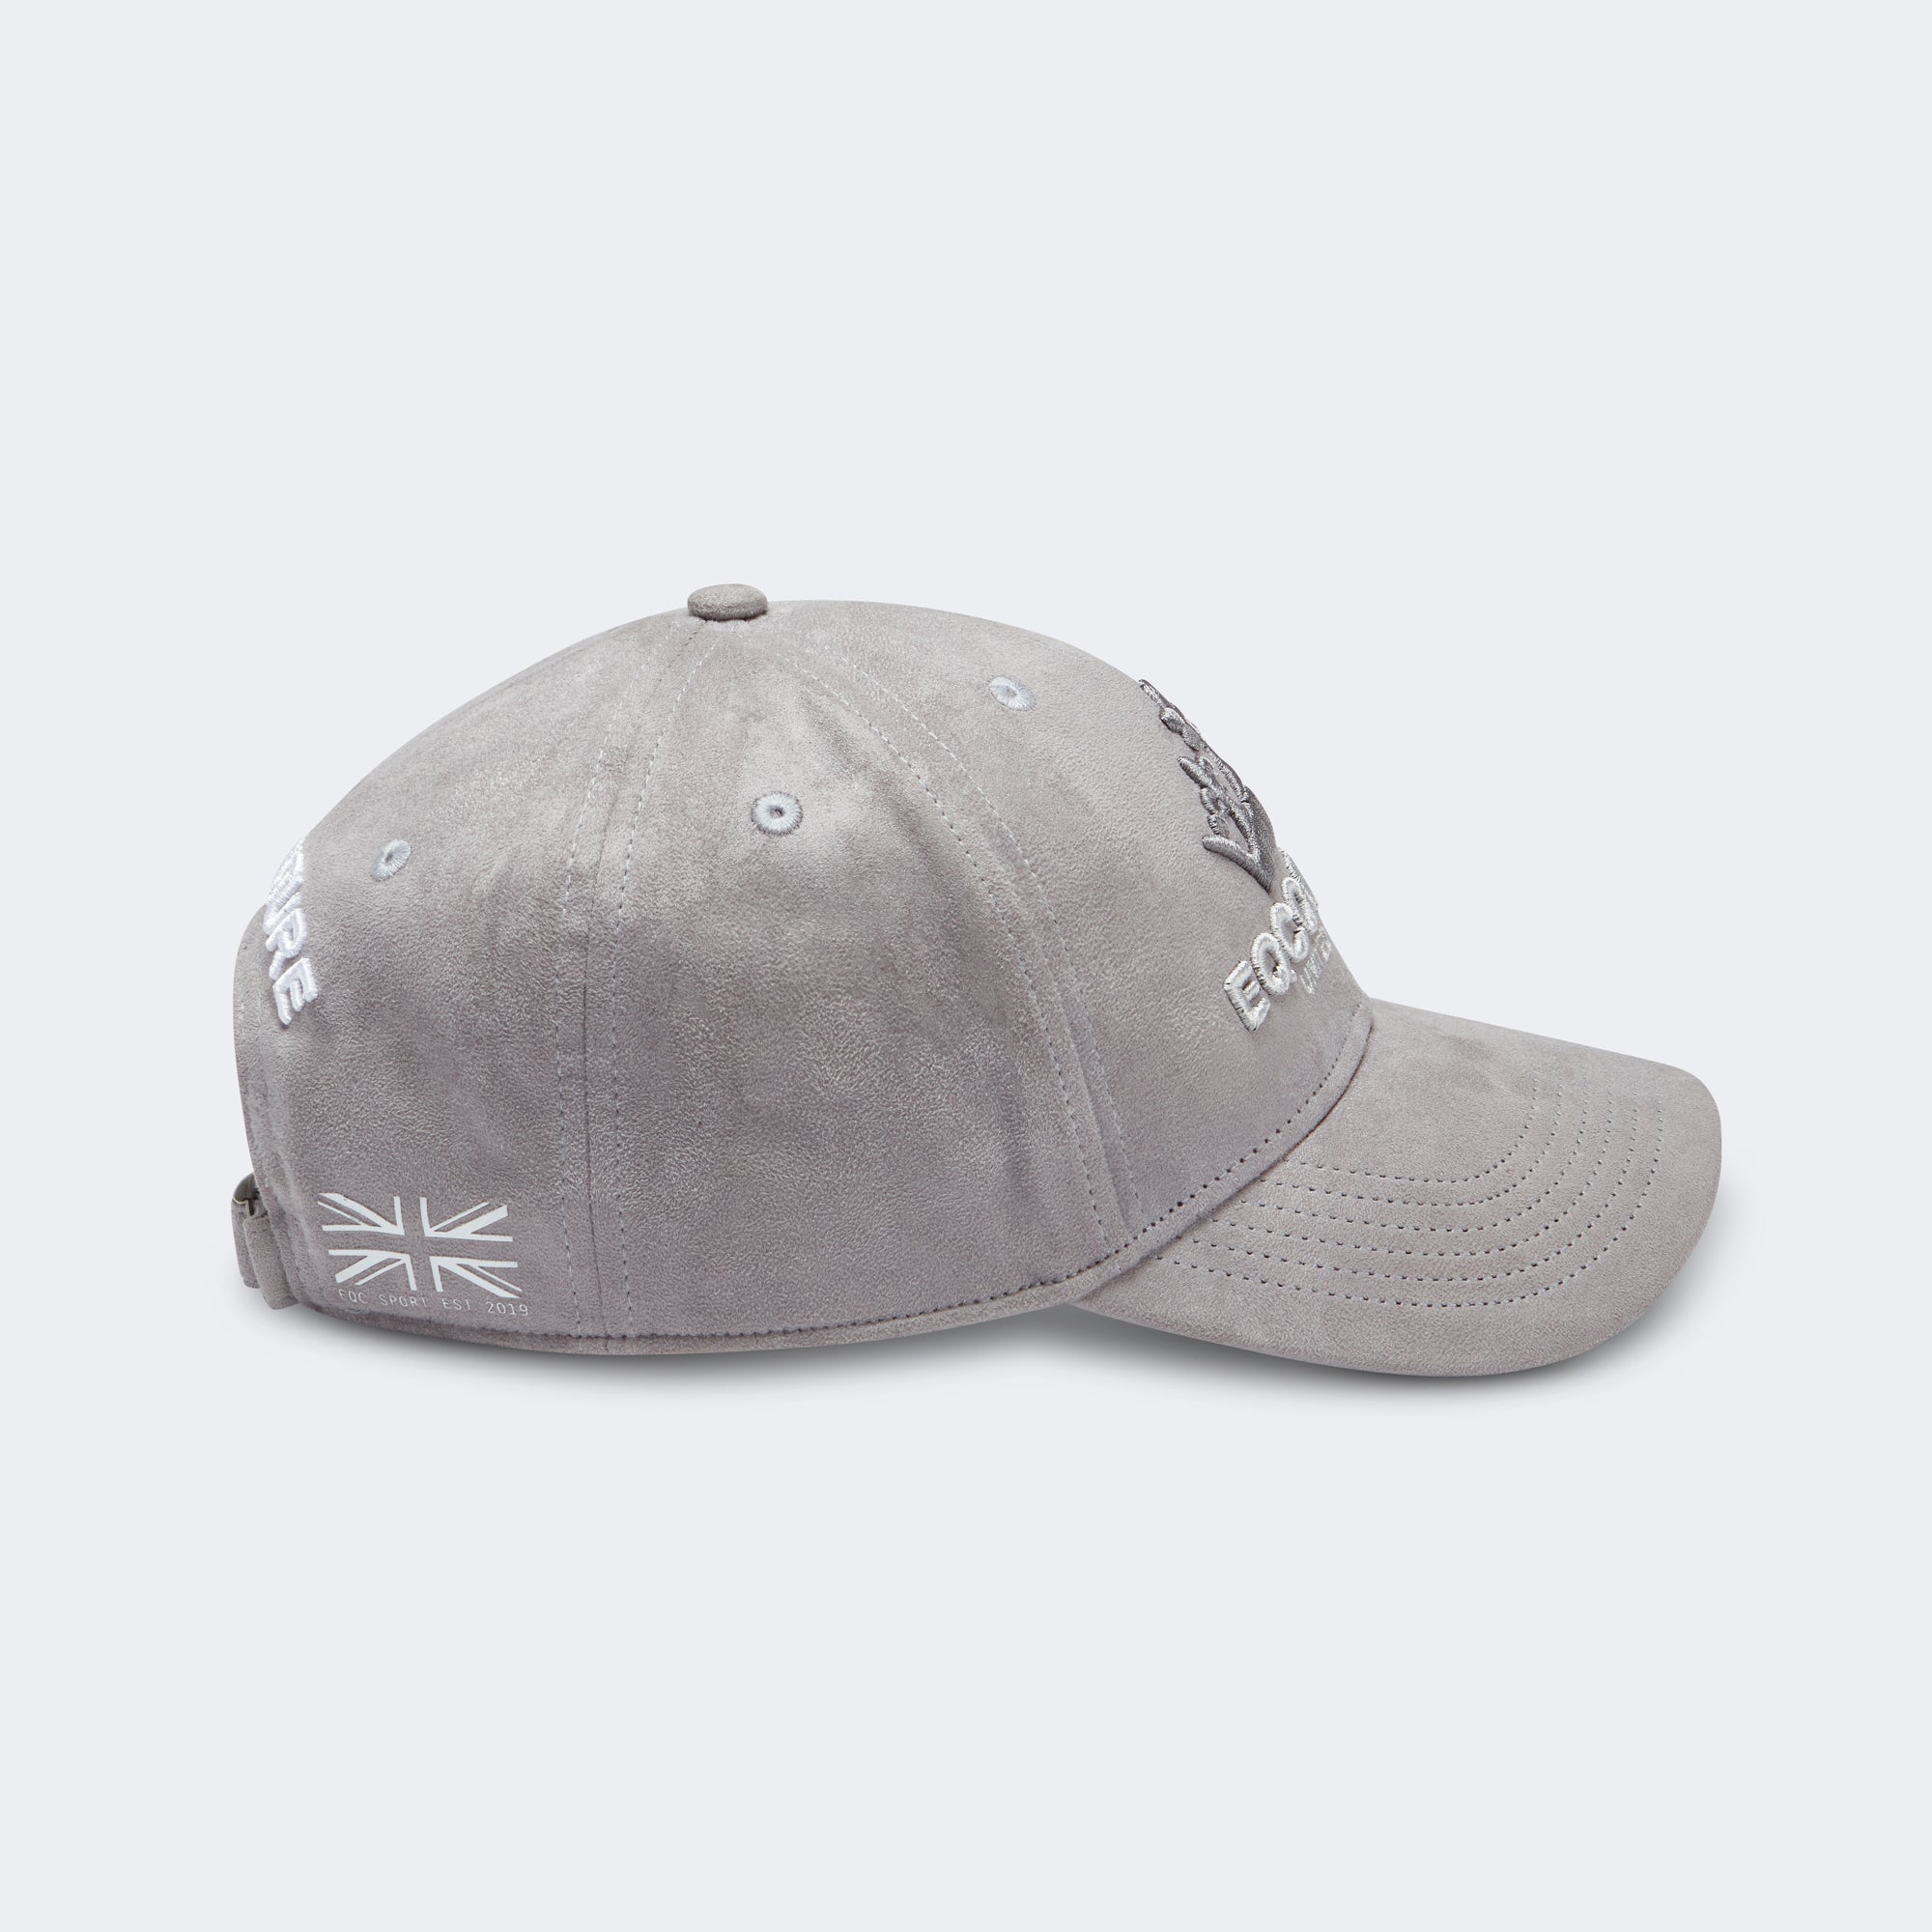 Exclusive Cap / Hat 'Royale' - Grey Suede